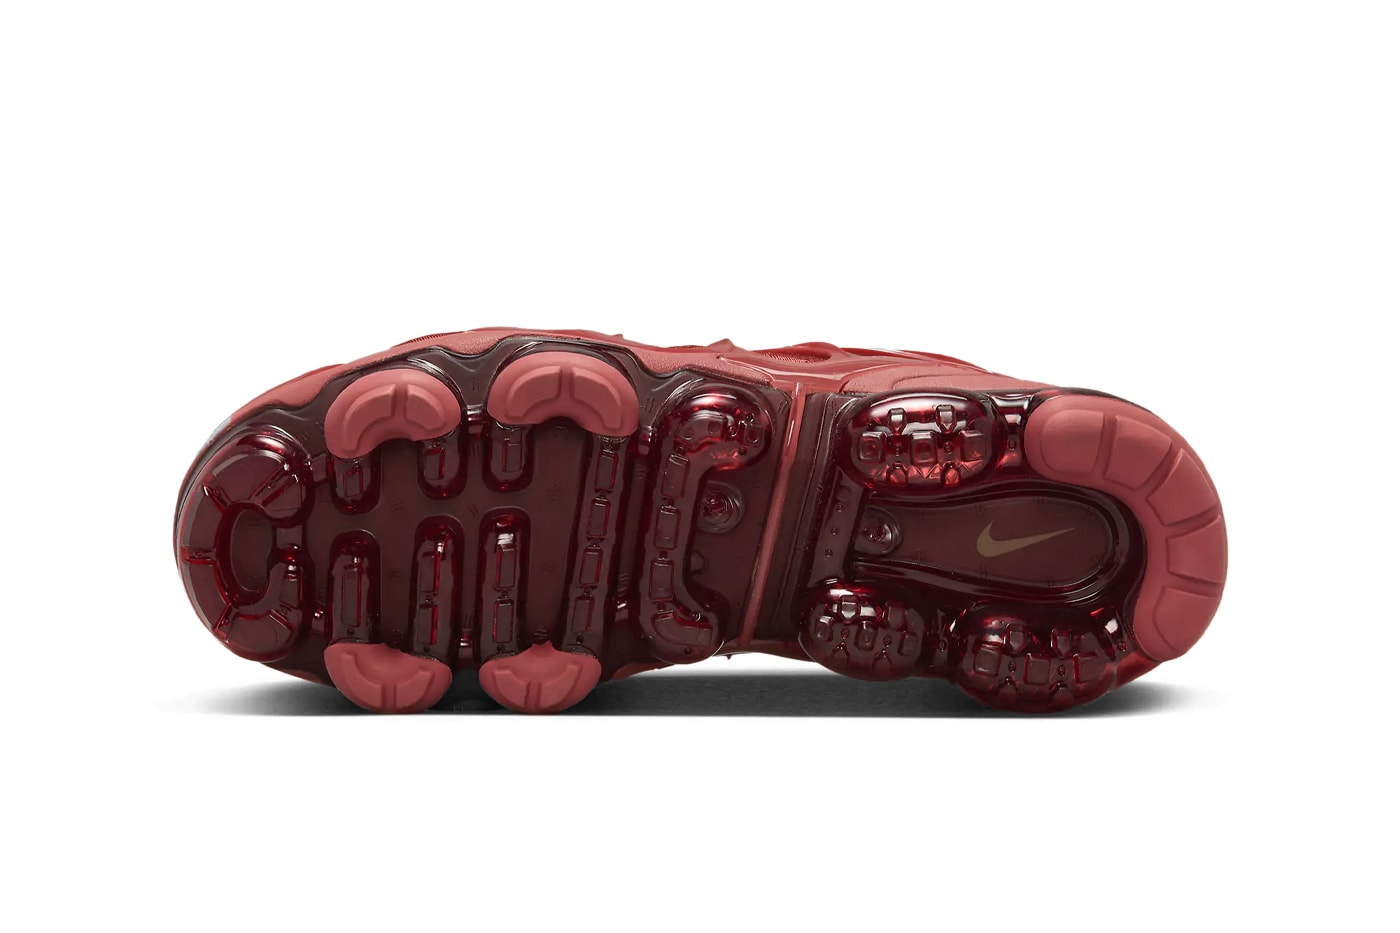 ナイキ エア ベイパーマックス プラスから大胆なオールレッドの新作が登場 Nike Air Vapormax Plus Surfaces in an All-Red Iteration FQ8878-661 Release Info swoosh technical sneaker